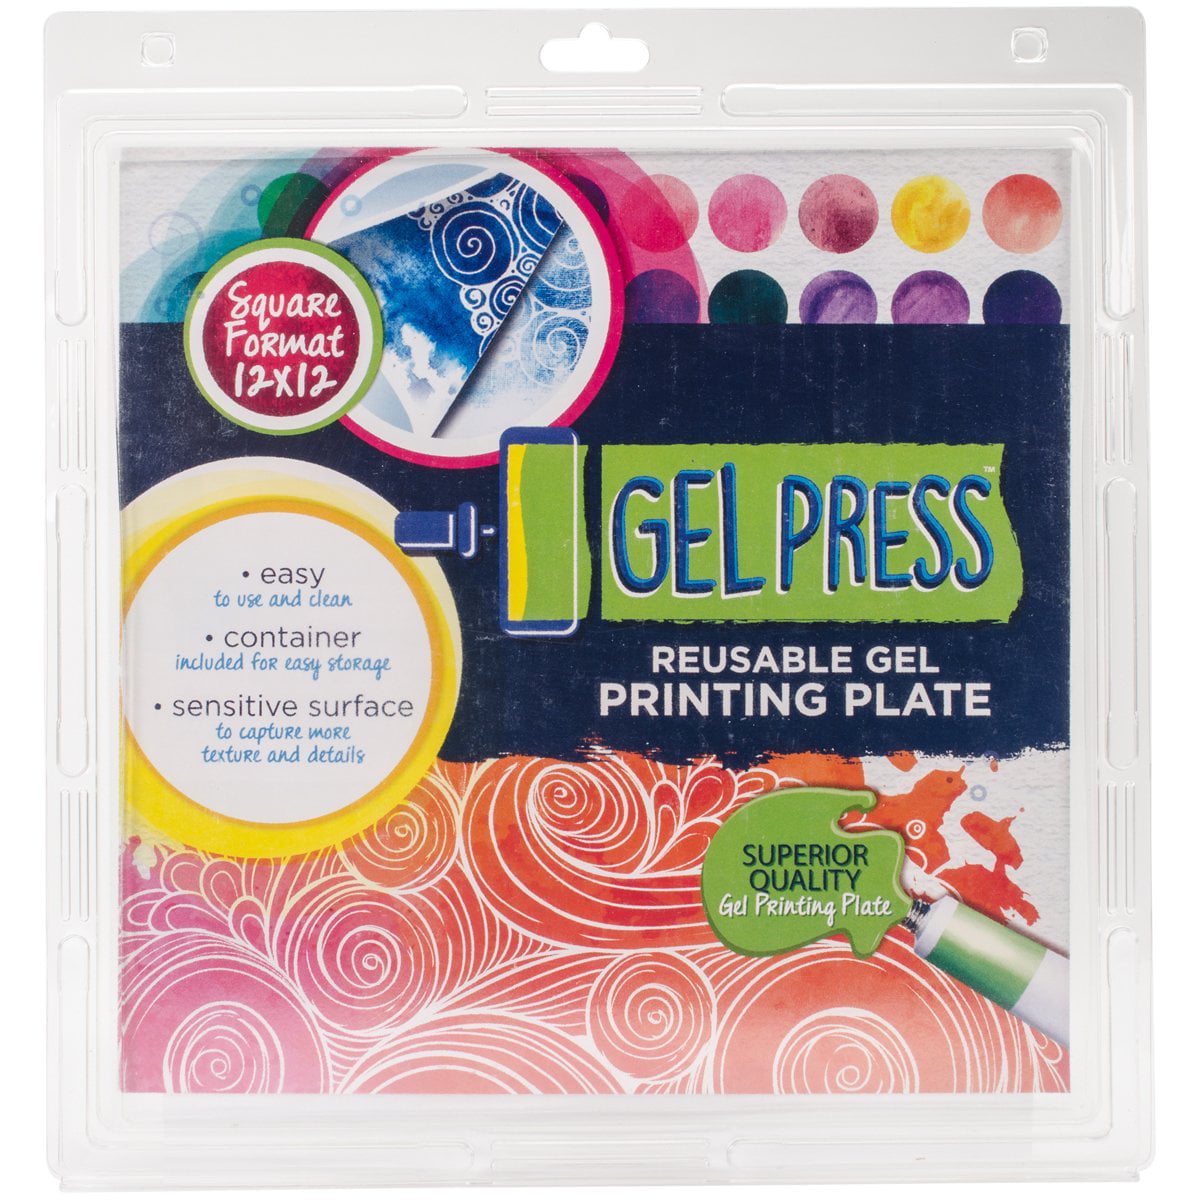 Gel Press 8 x 10 REUSABLE GEL PRINTING PLATE 10802 – Simon Says Stamp